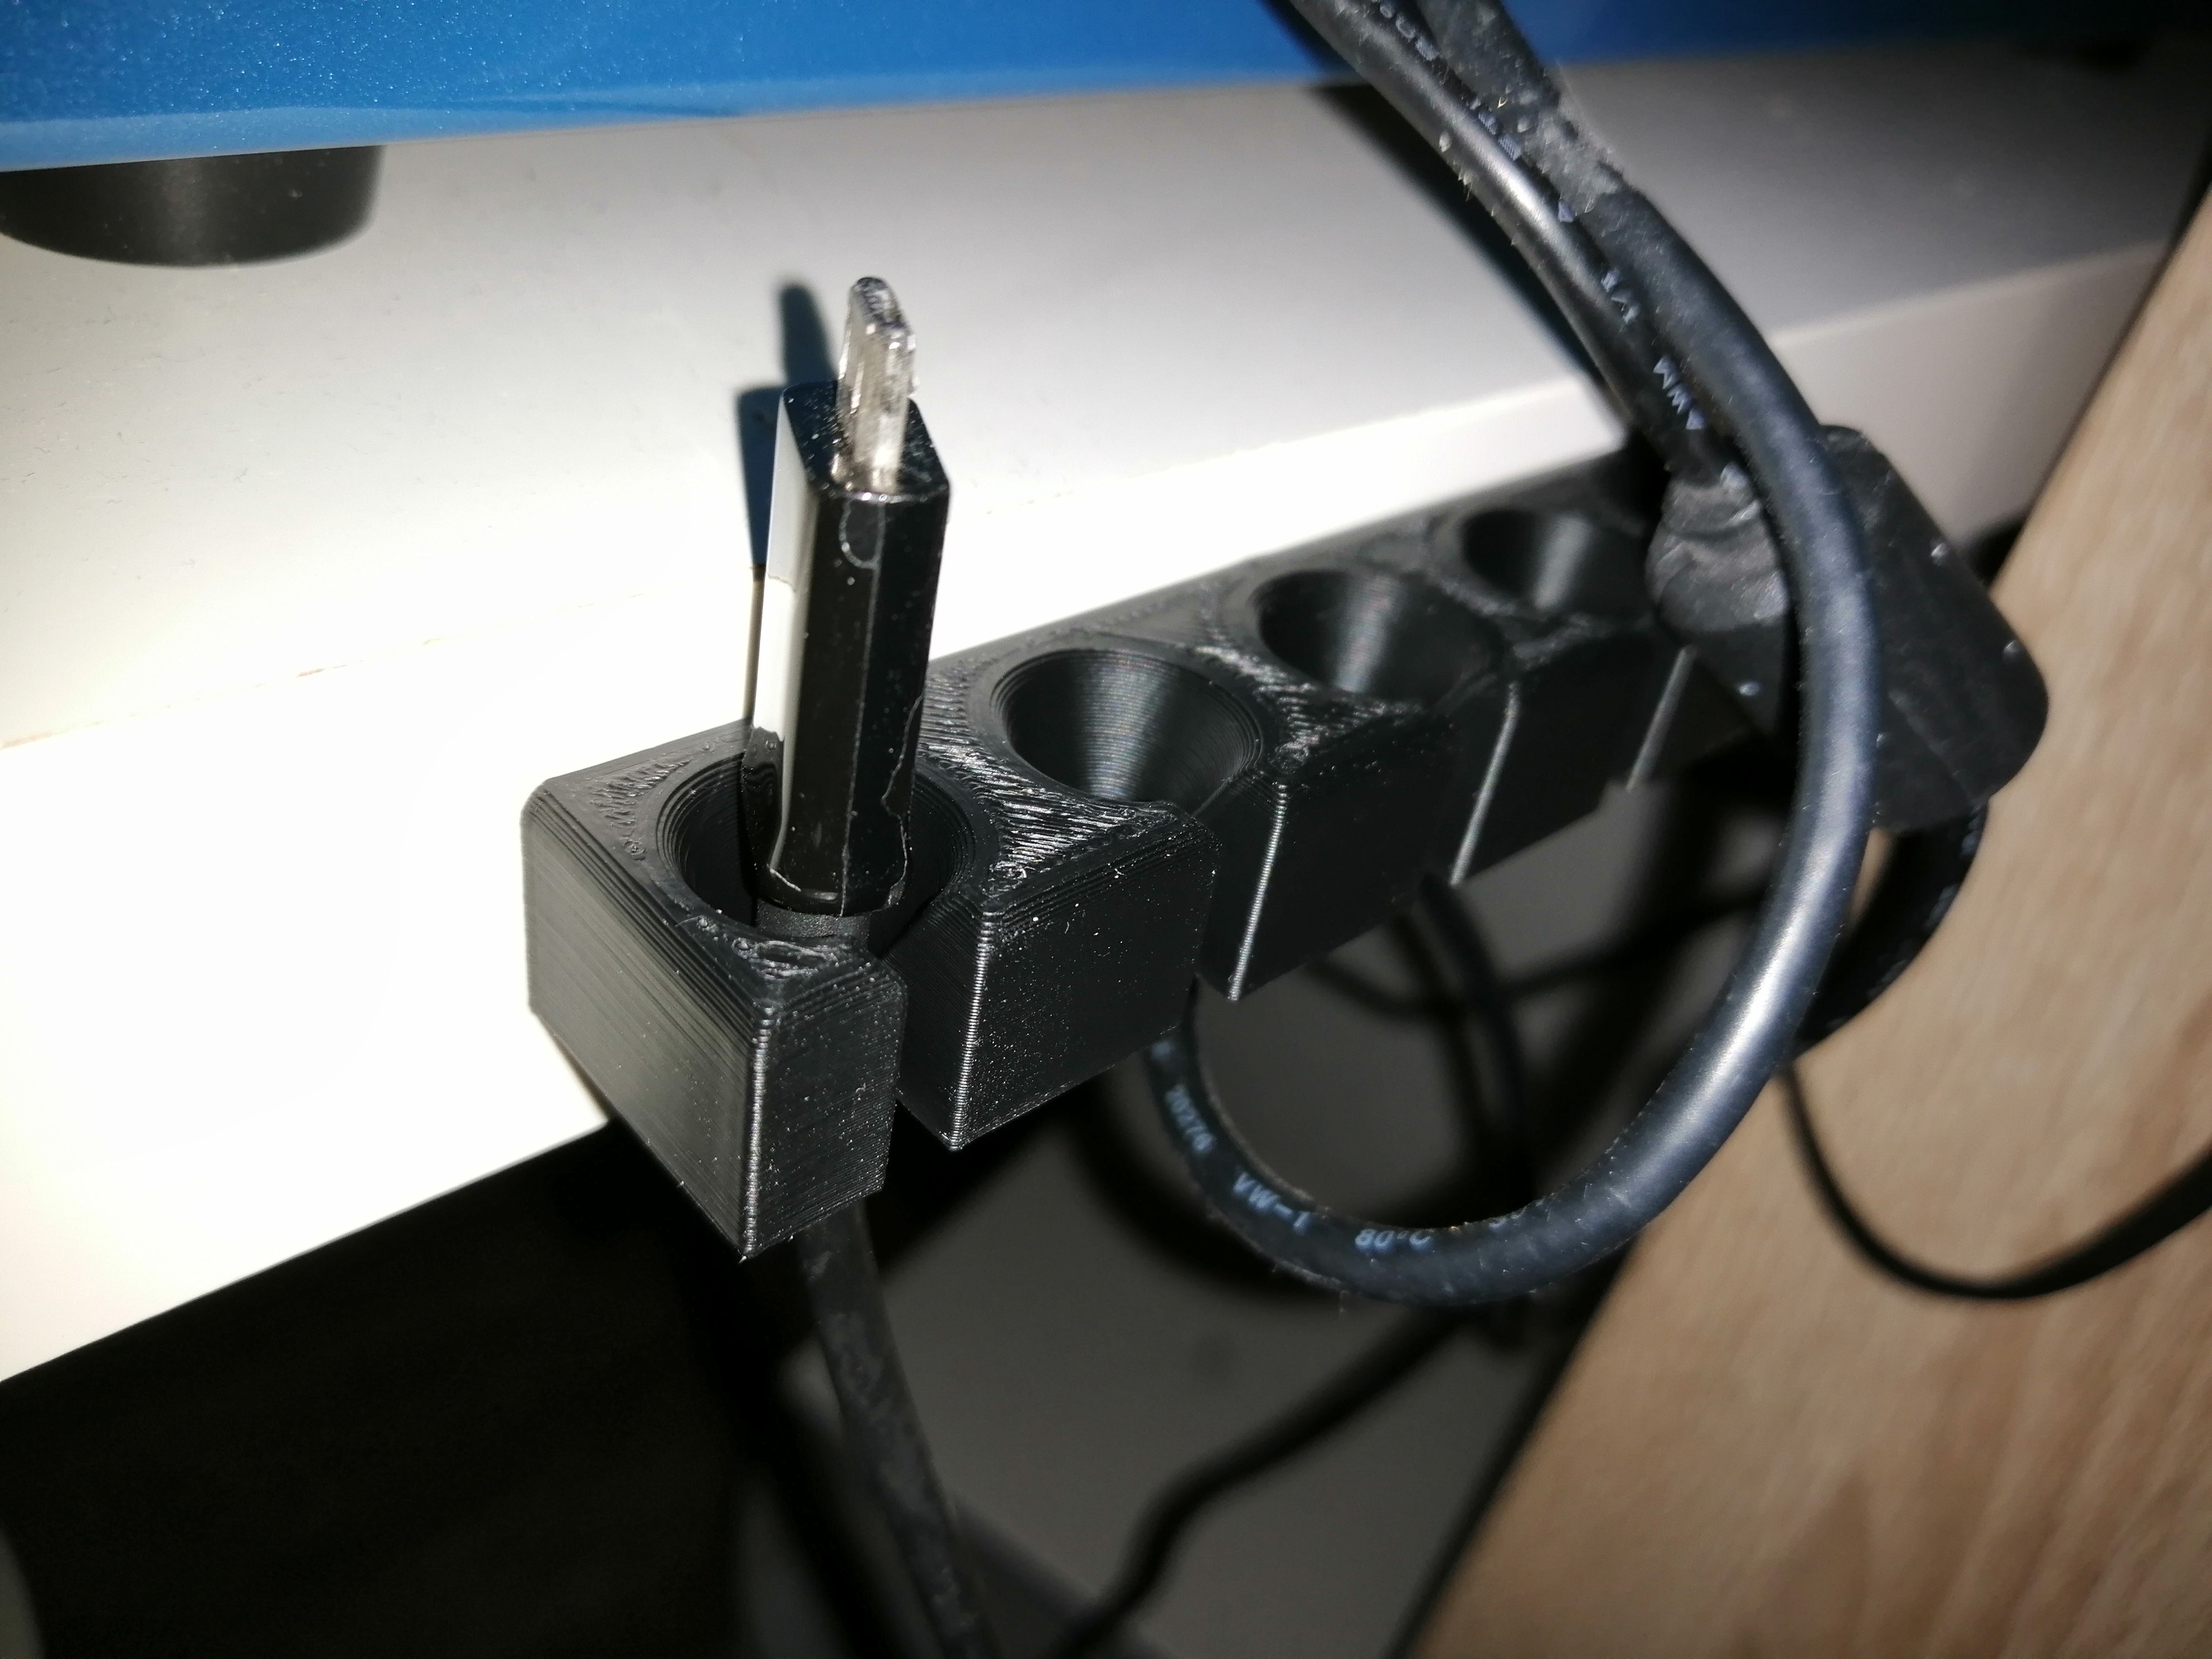 Supporto per cavi USB per organizzare i cavi